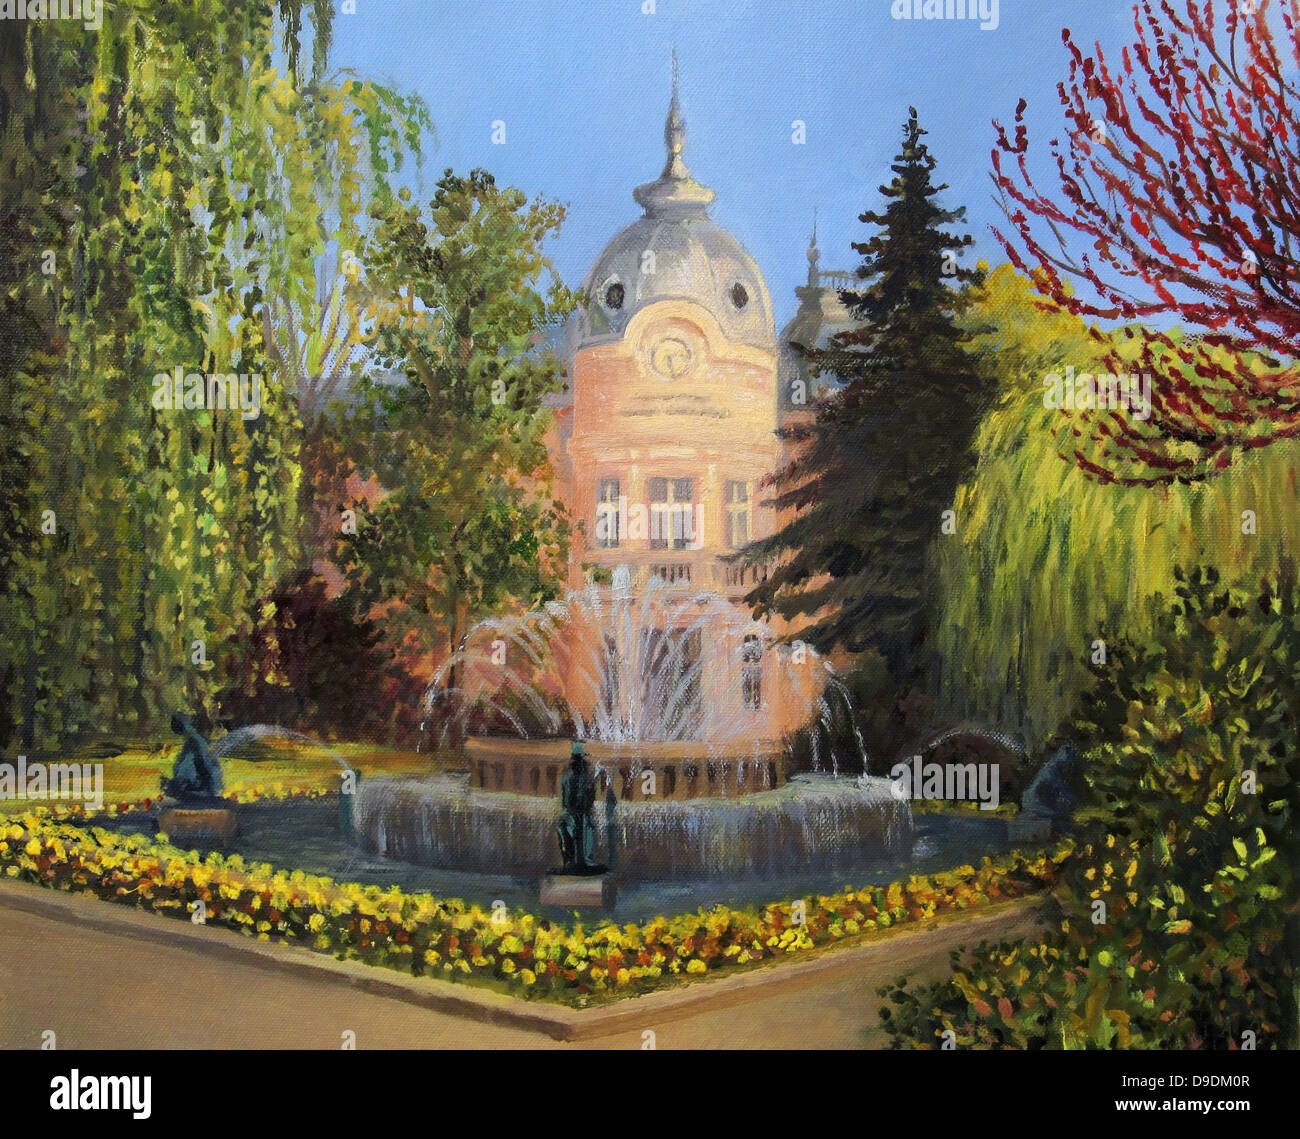 Un dipinto ad olio su tela della costruzione della libreria 'Lyuben Karavelov' a Ruse, Bulgaria con la fontana e il giardino. Foto Stock